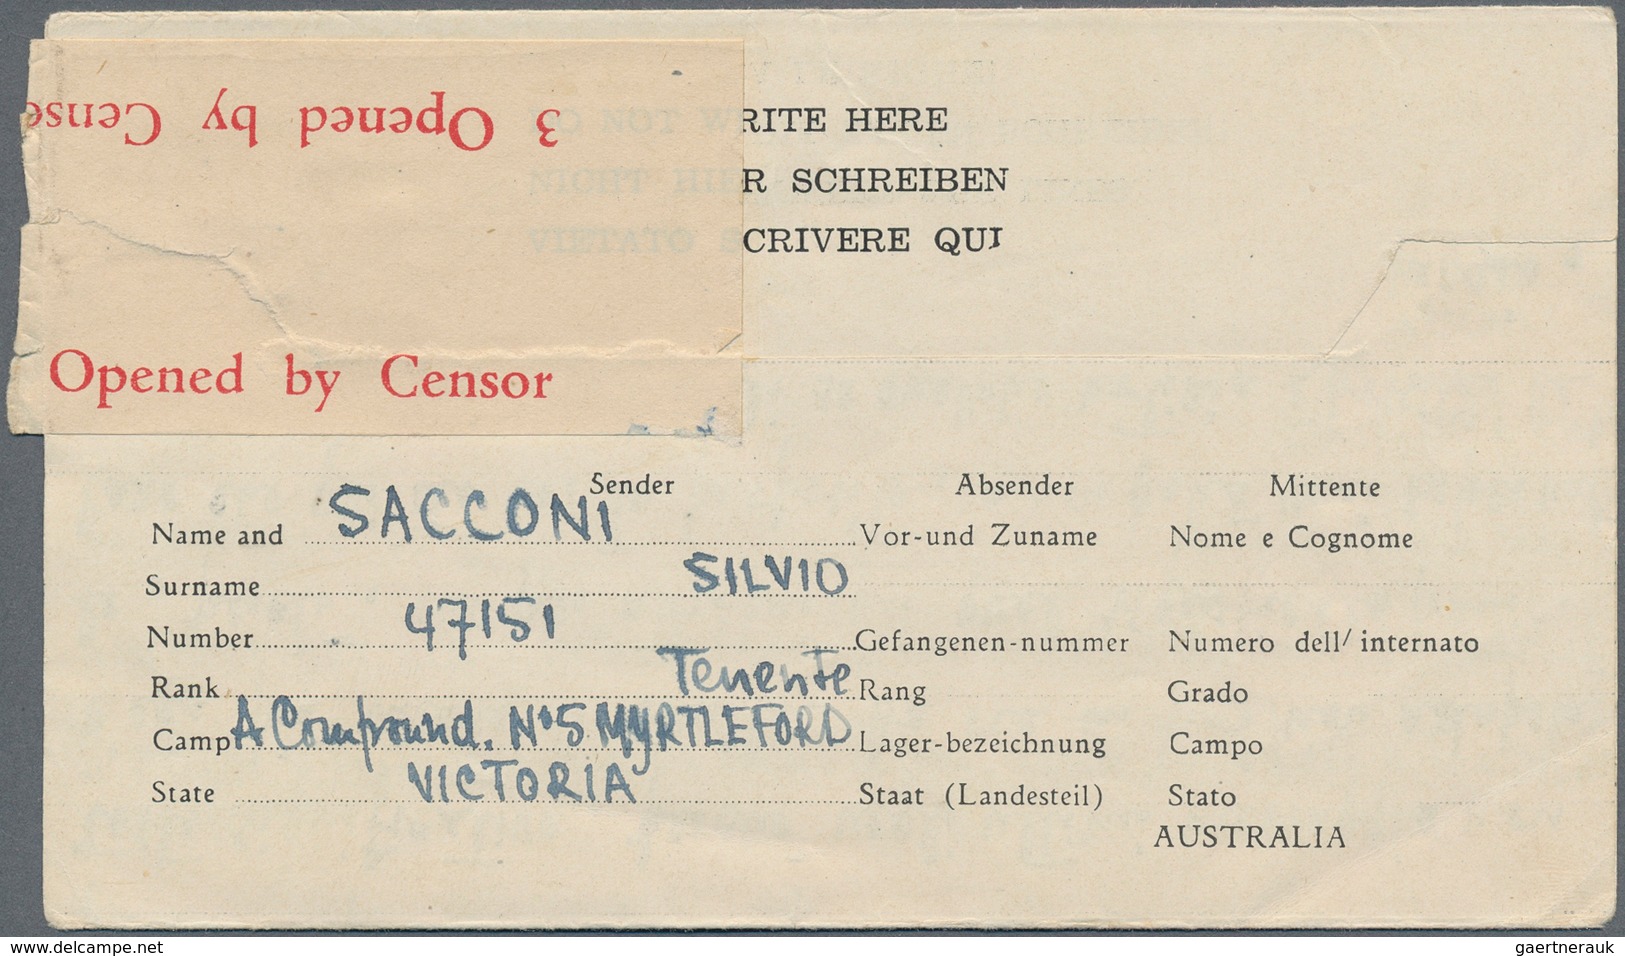 Australien - Ganzsachen: 1945, POW Airmail Lettersheet 1s Blue (3): Used July 21 From Mil. P.O. Myrt - Postwaardestukken